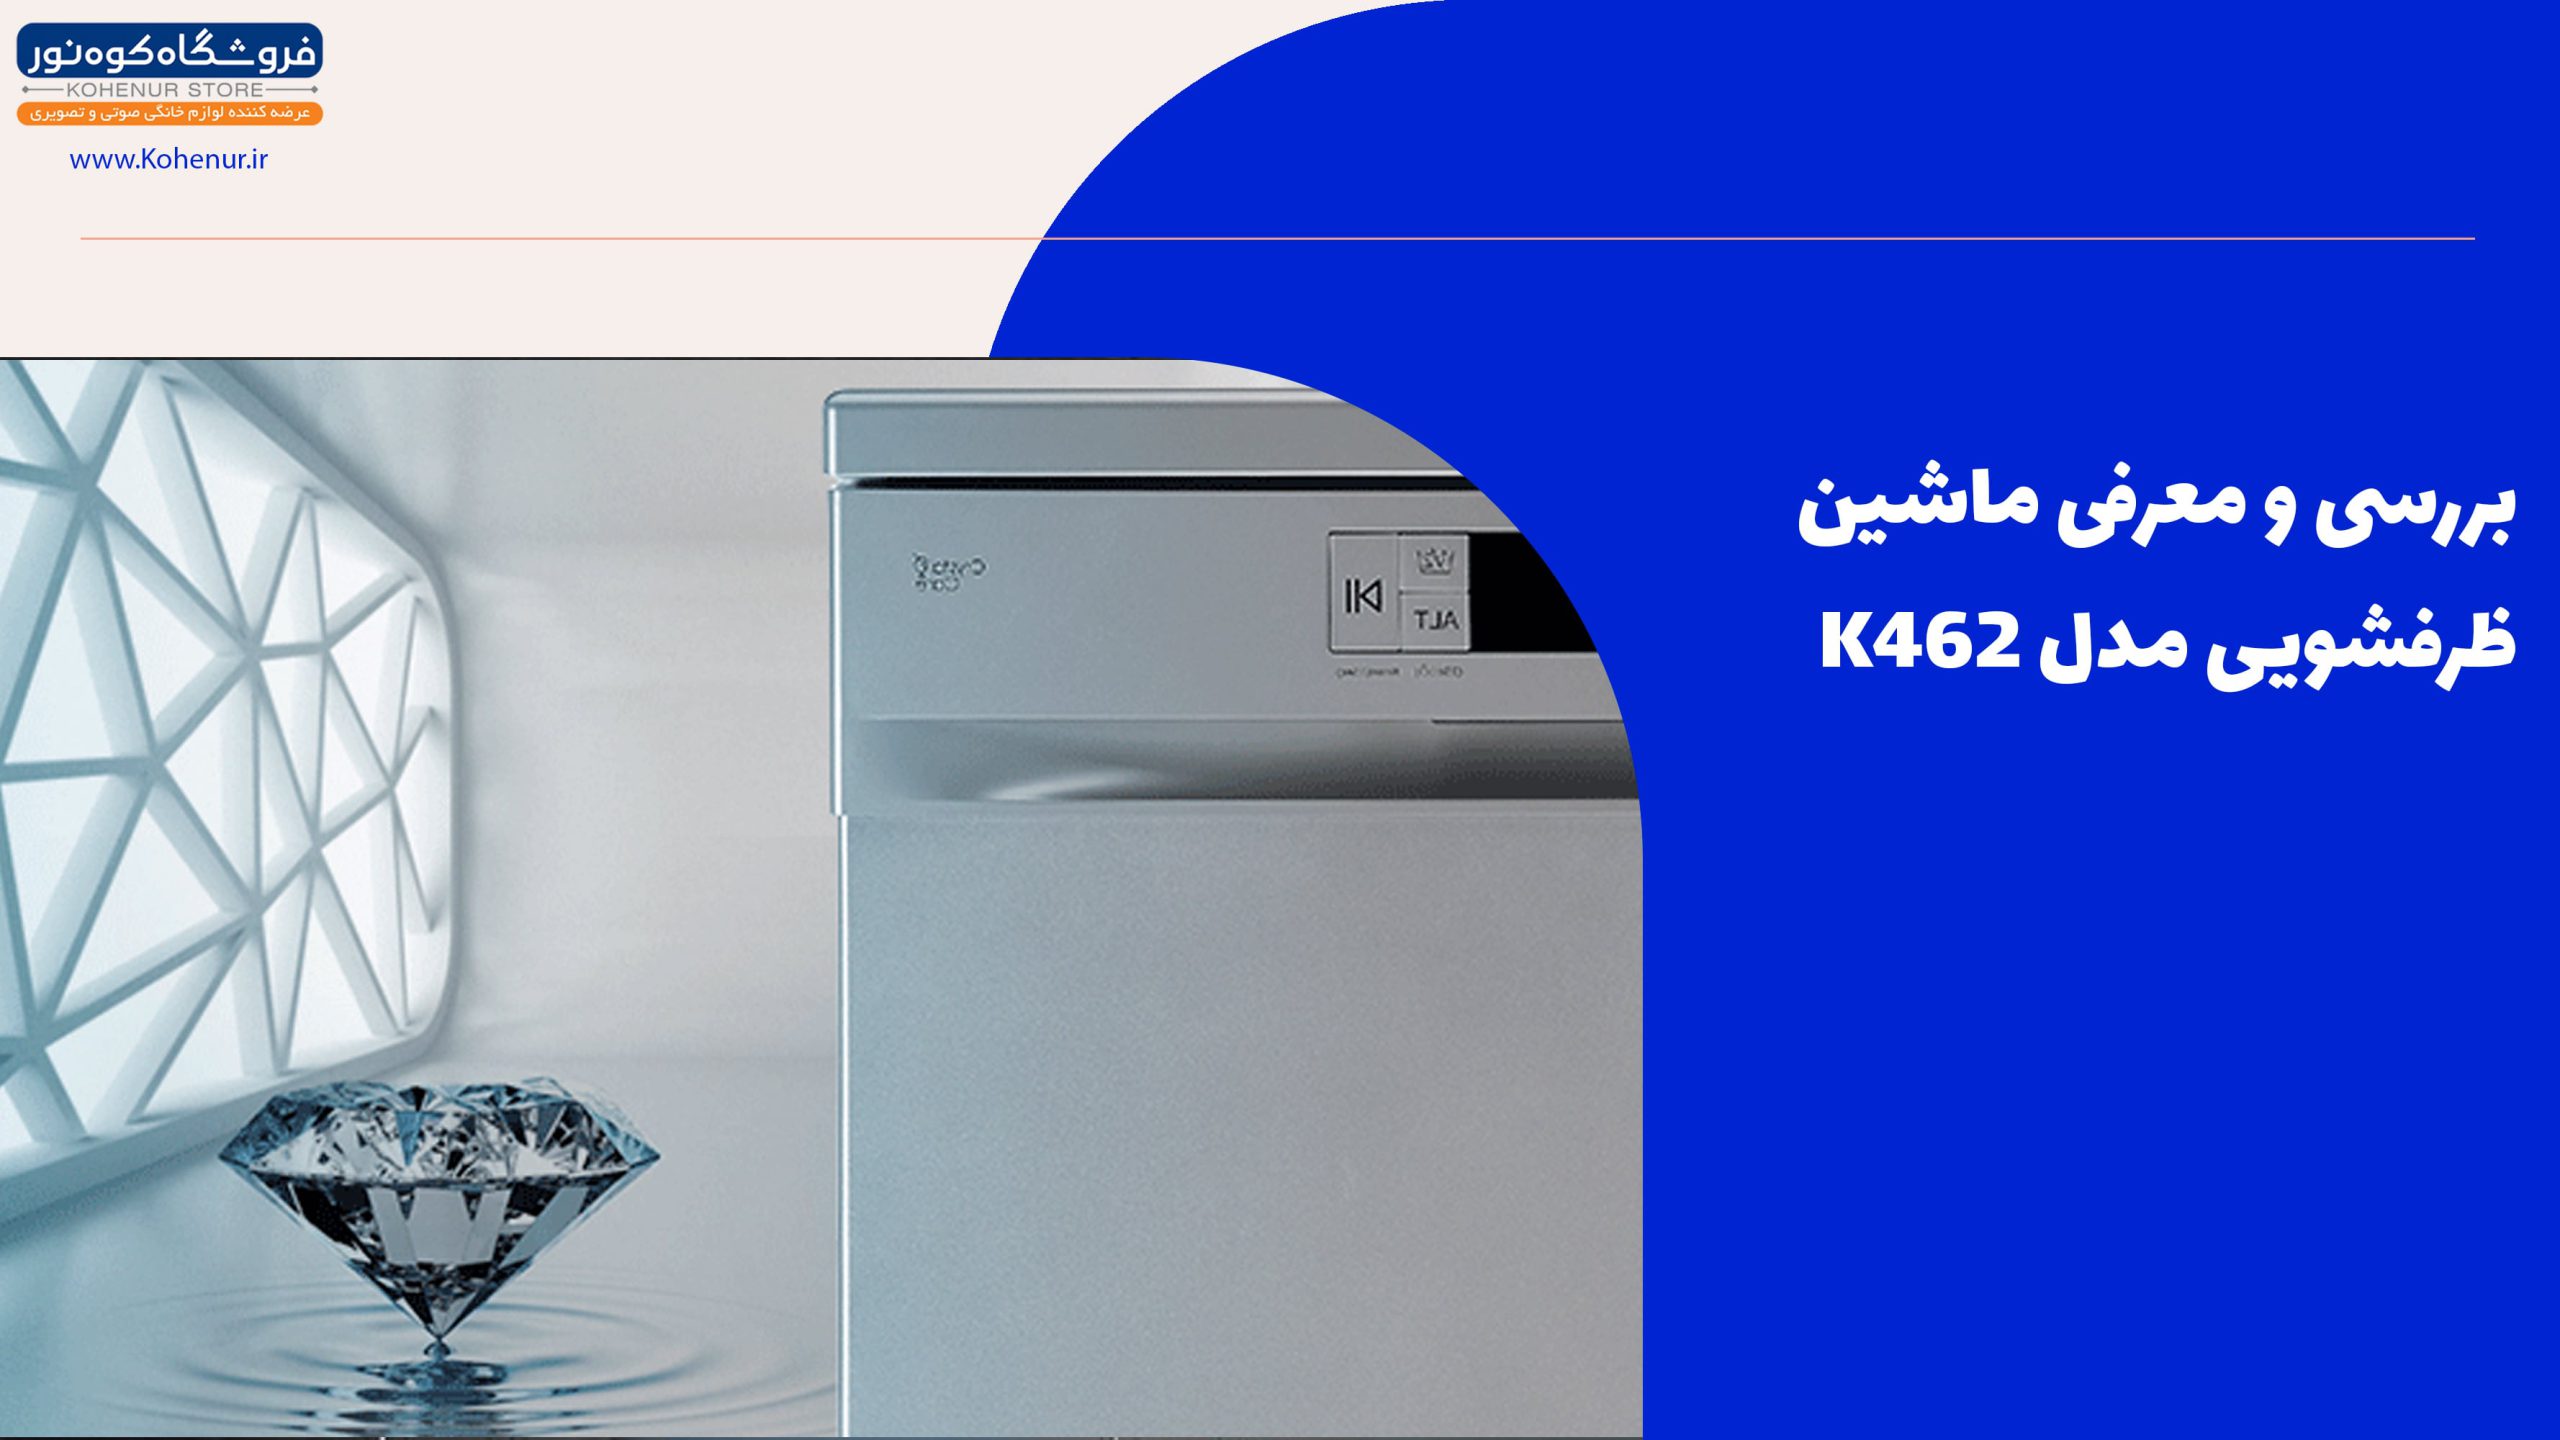 بررسی و معرفی ماشین ظرفشویی مدل K462